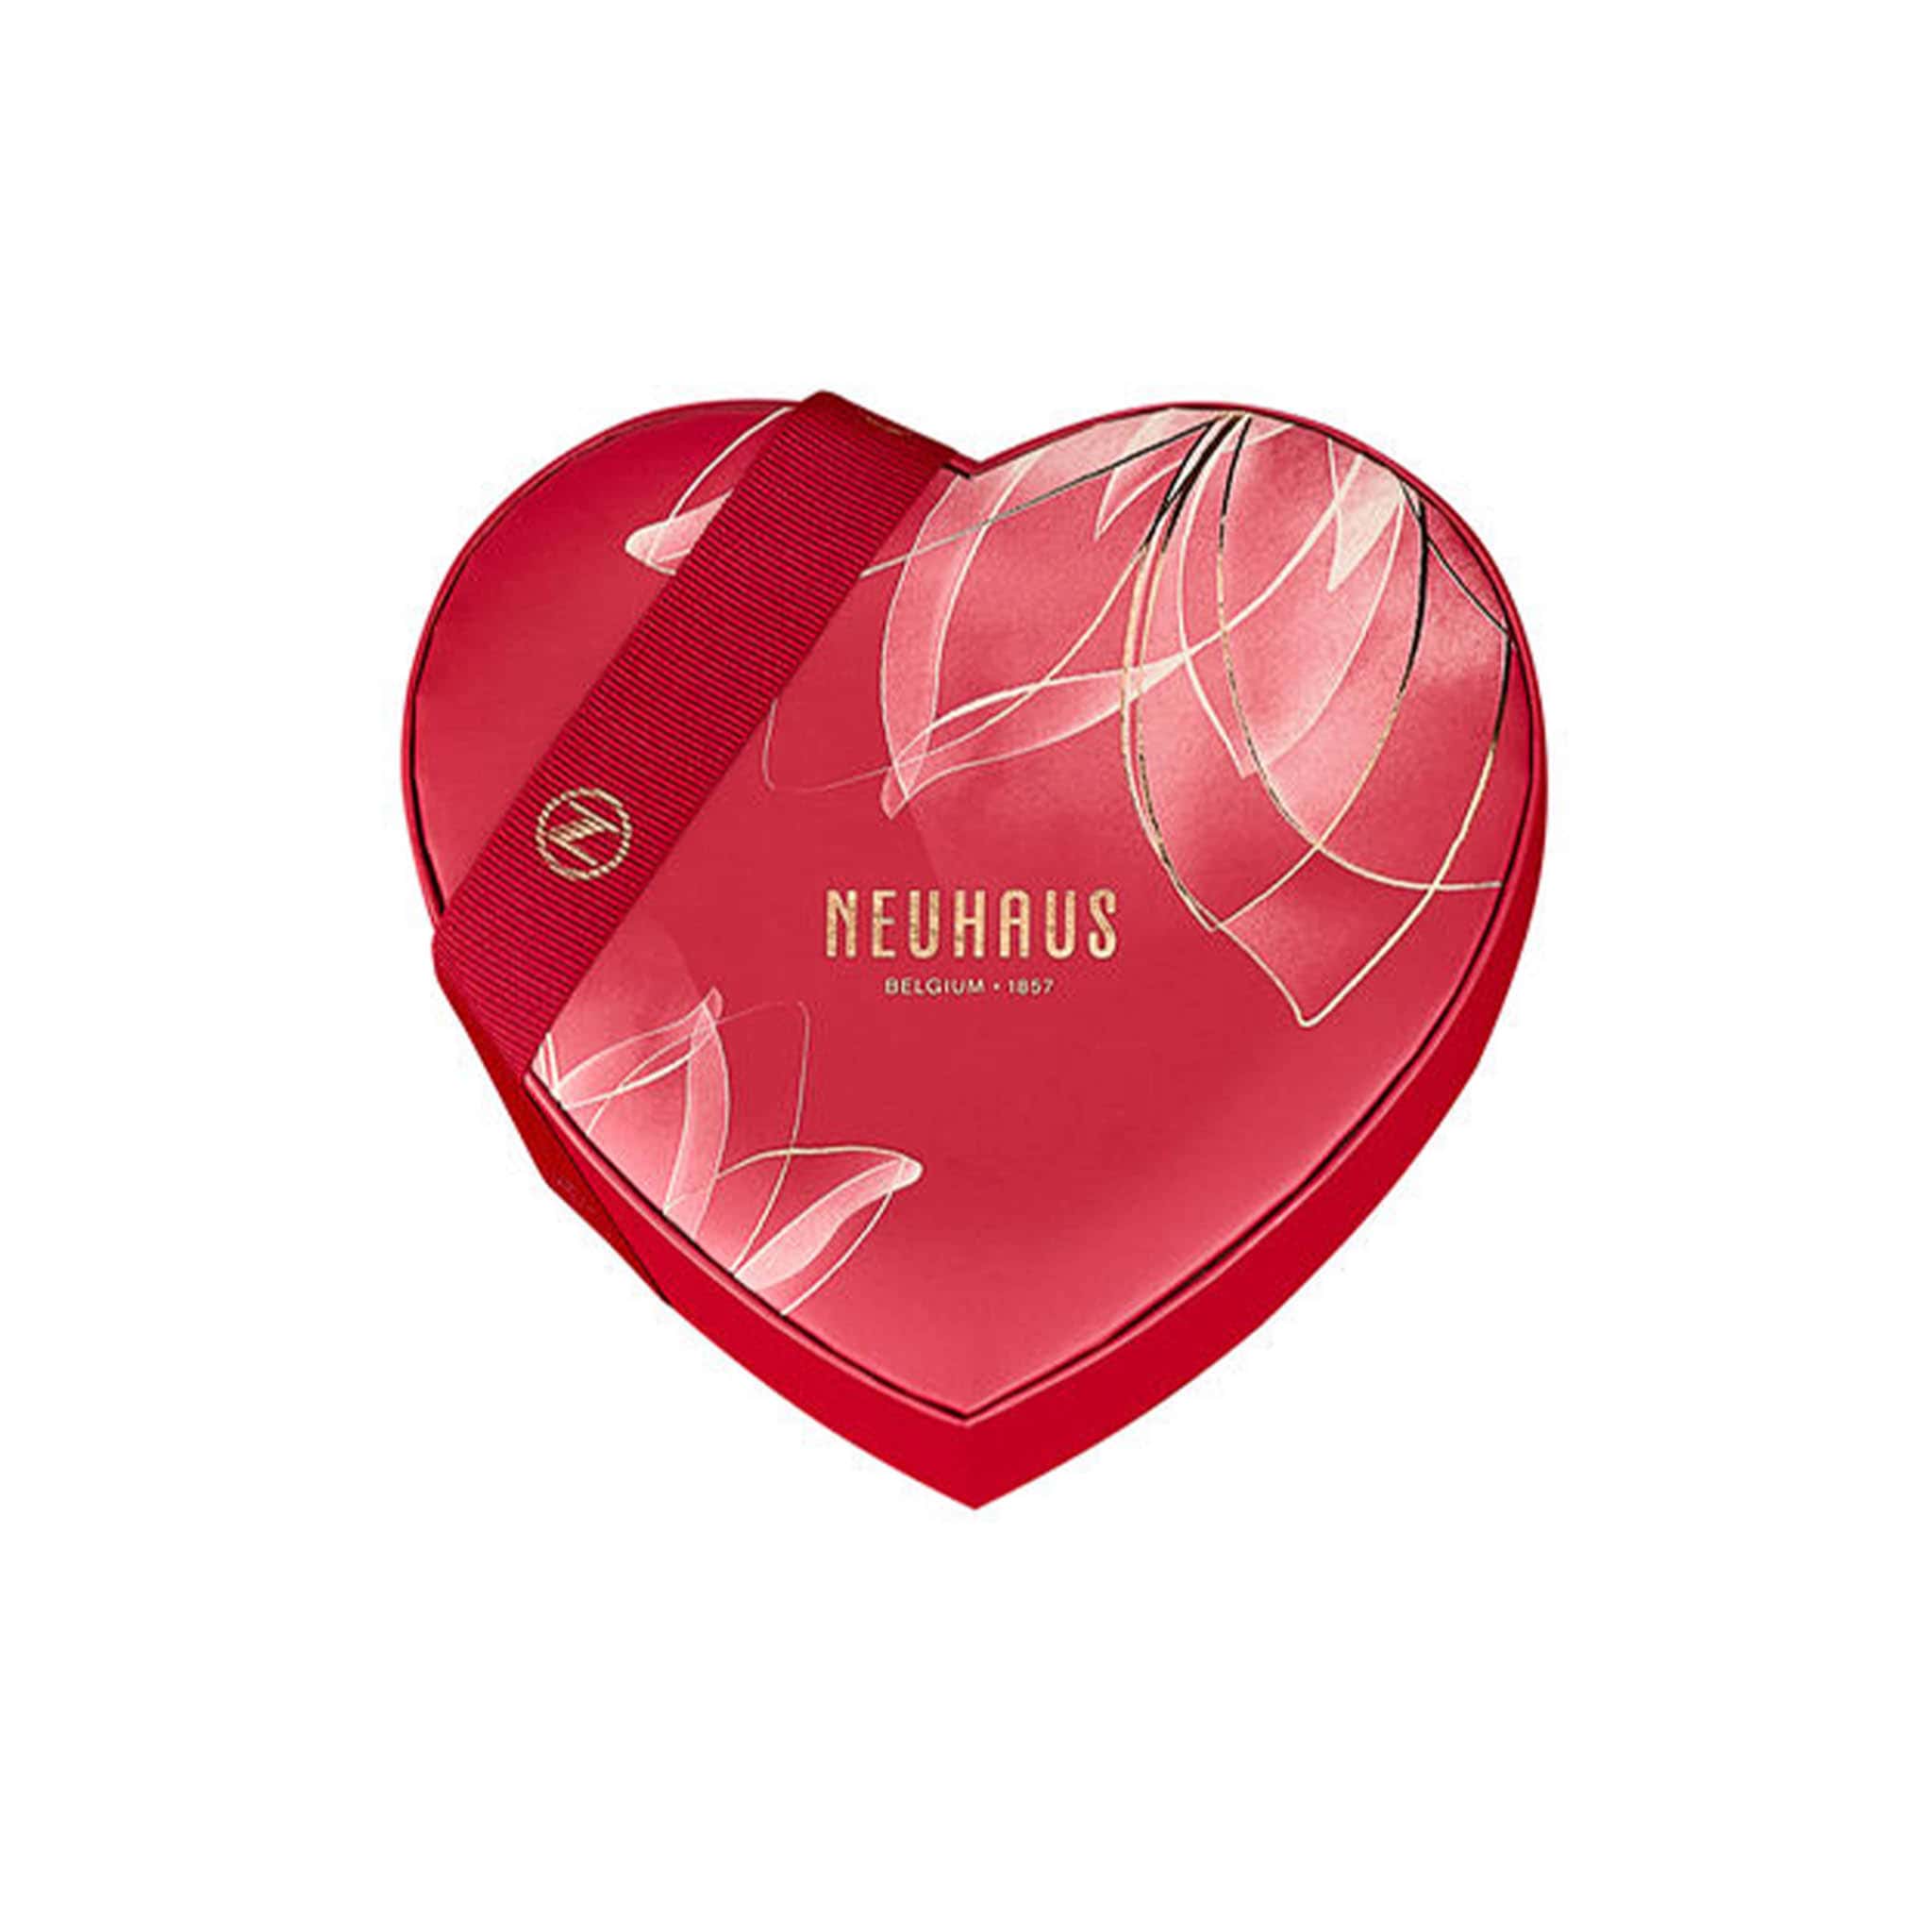 Neuhaus Small Red Heart Box of Chocolates, 185g